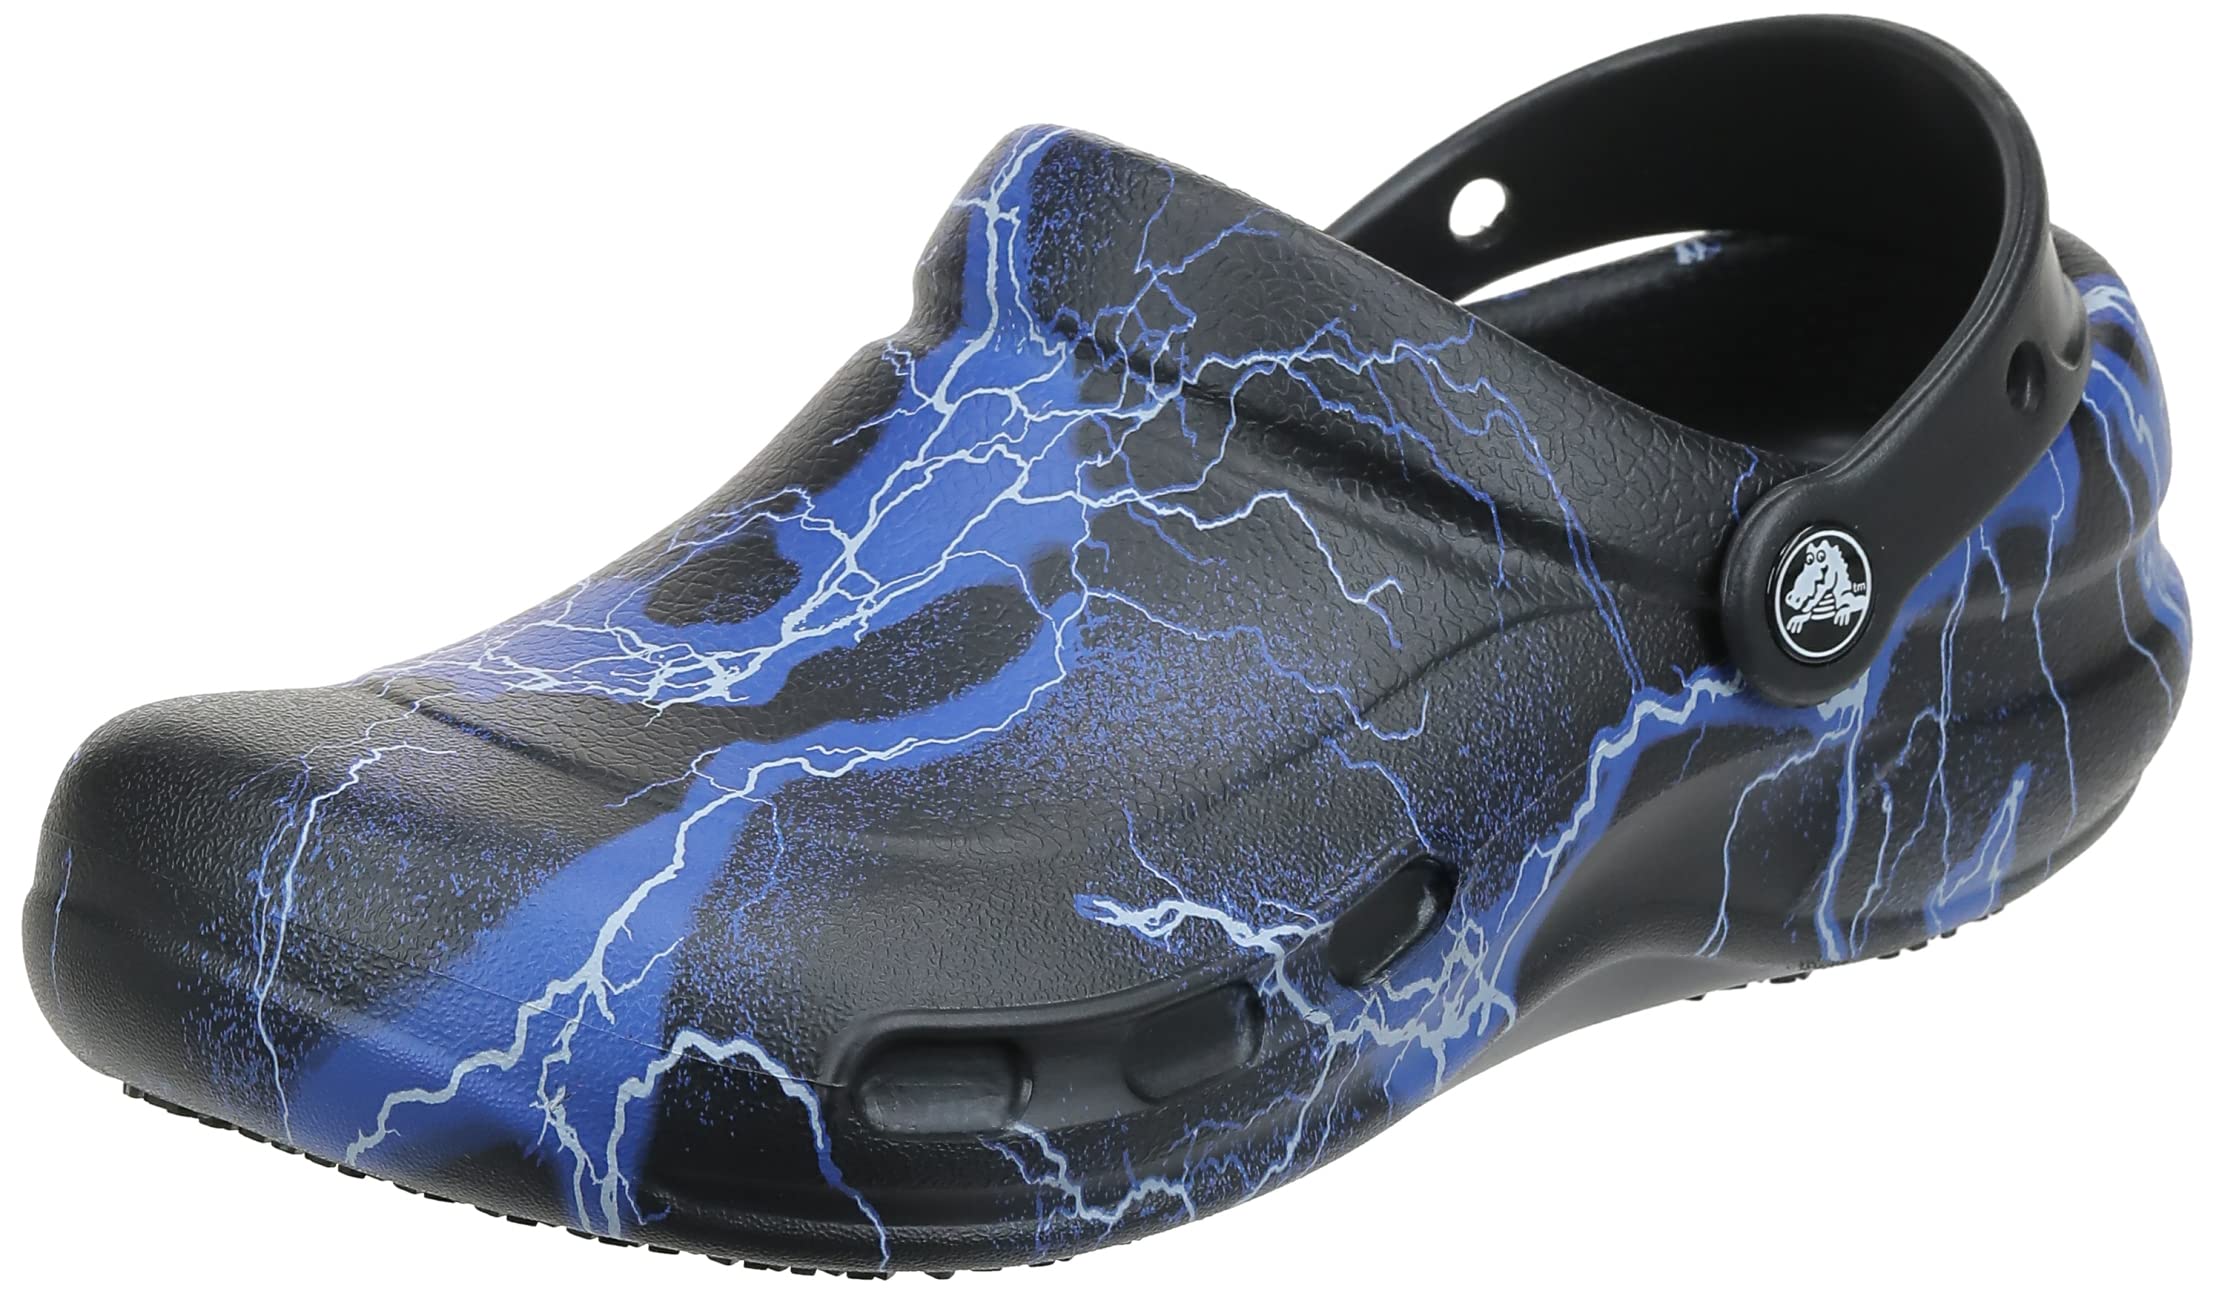 Crocs Unisex-Adult Bistro Graphic Clogs, Slip Resistant Work Shoes